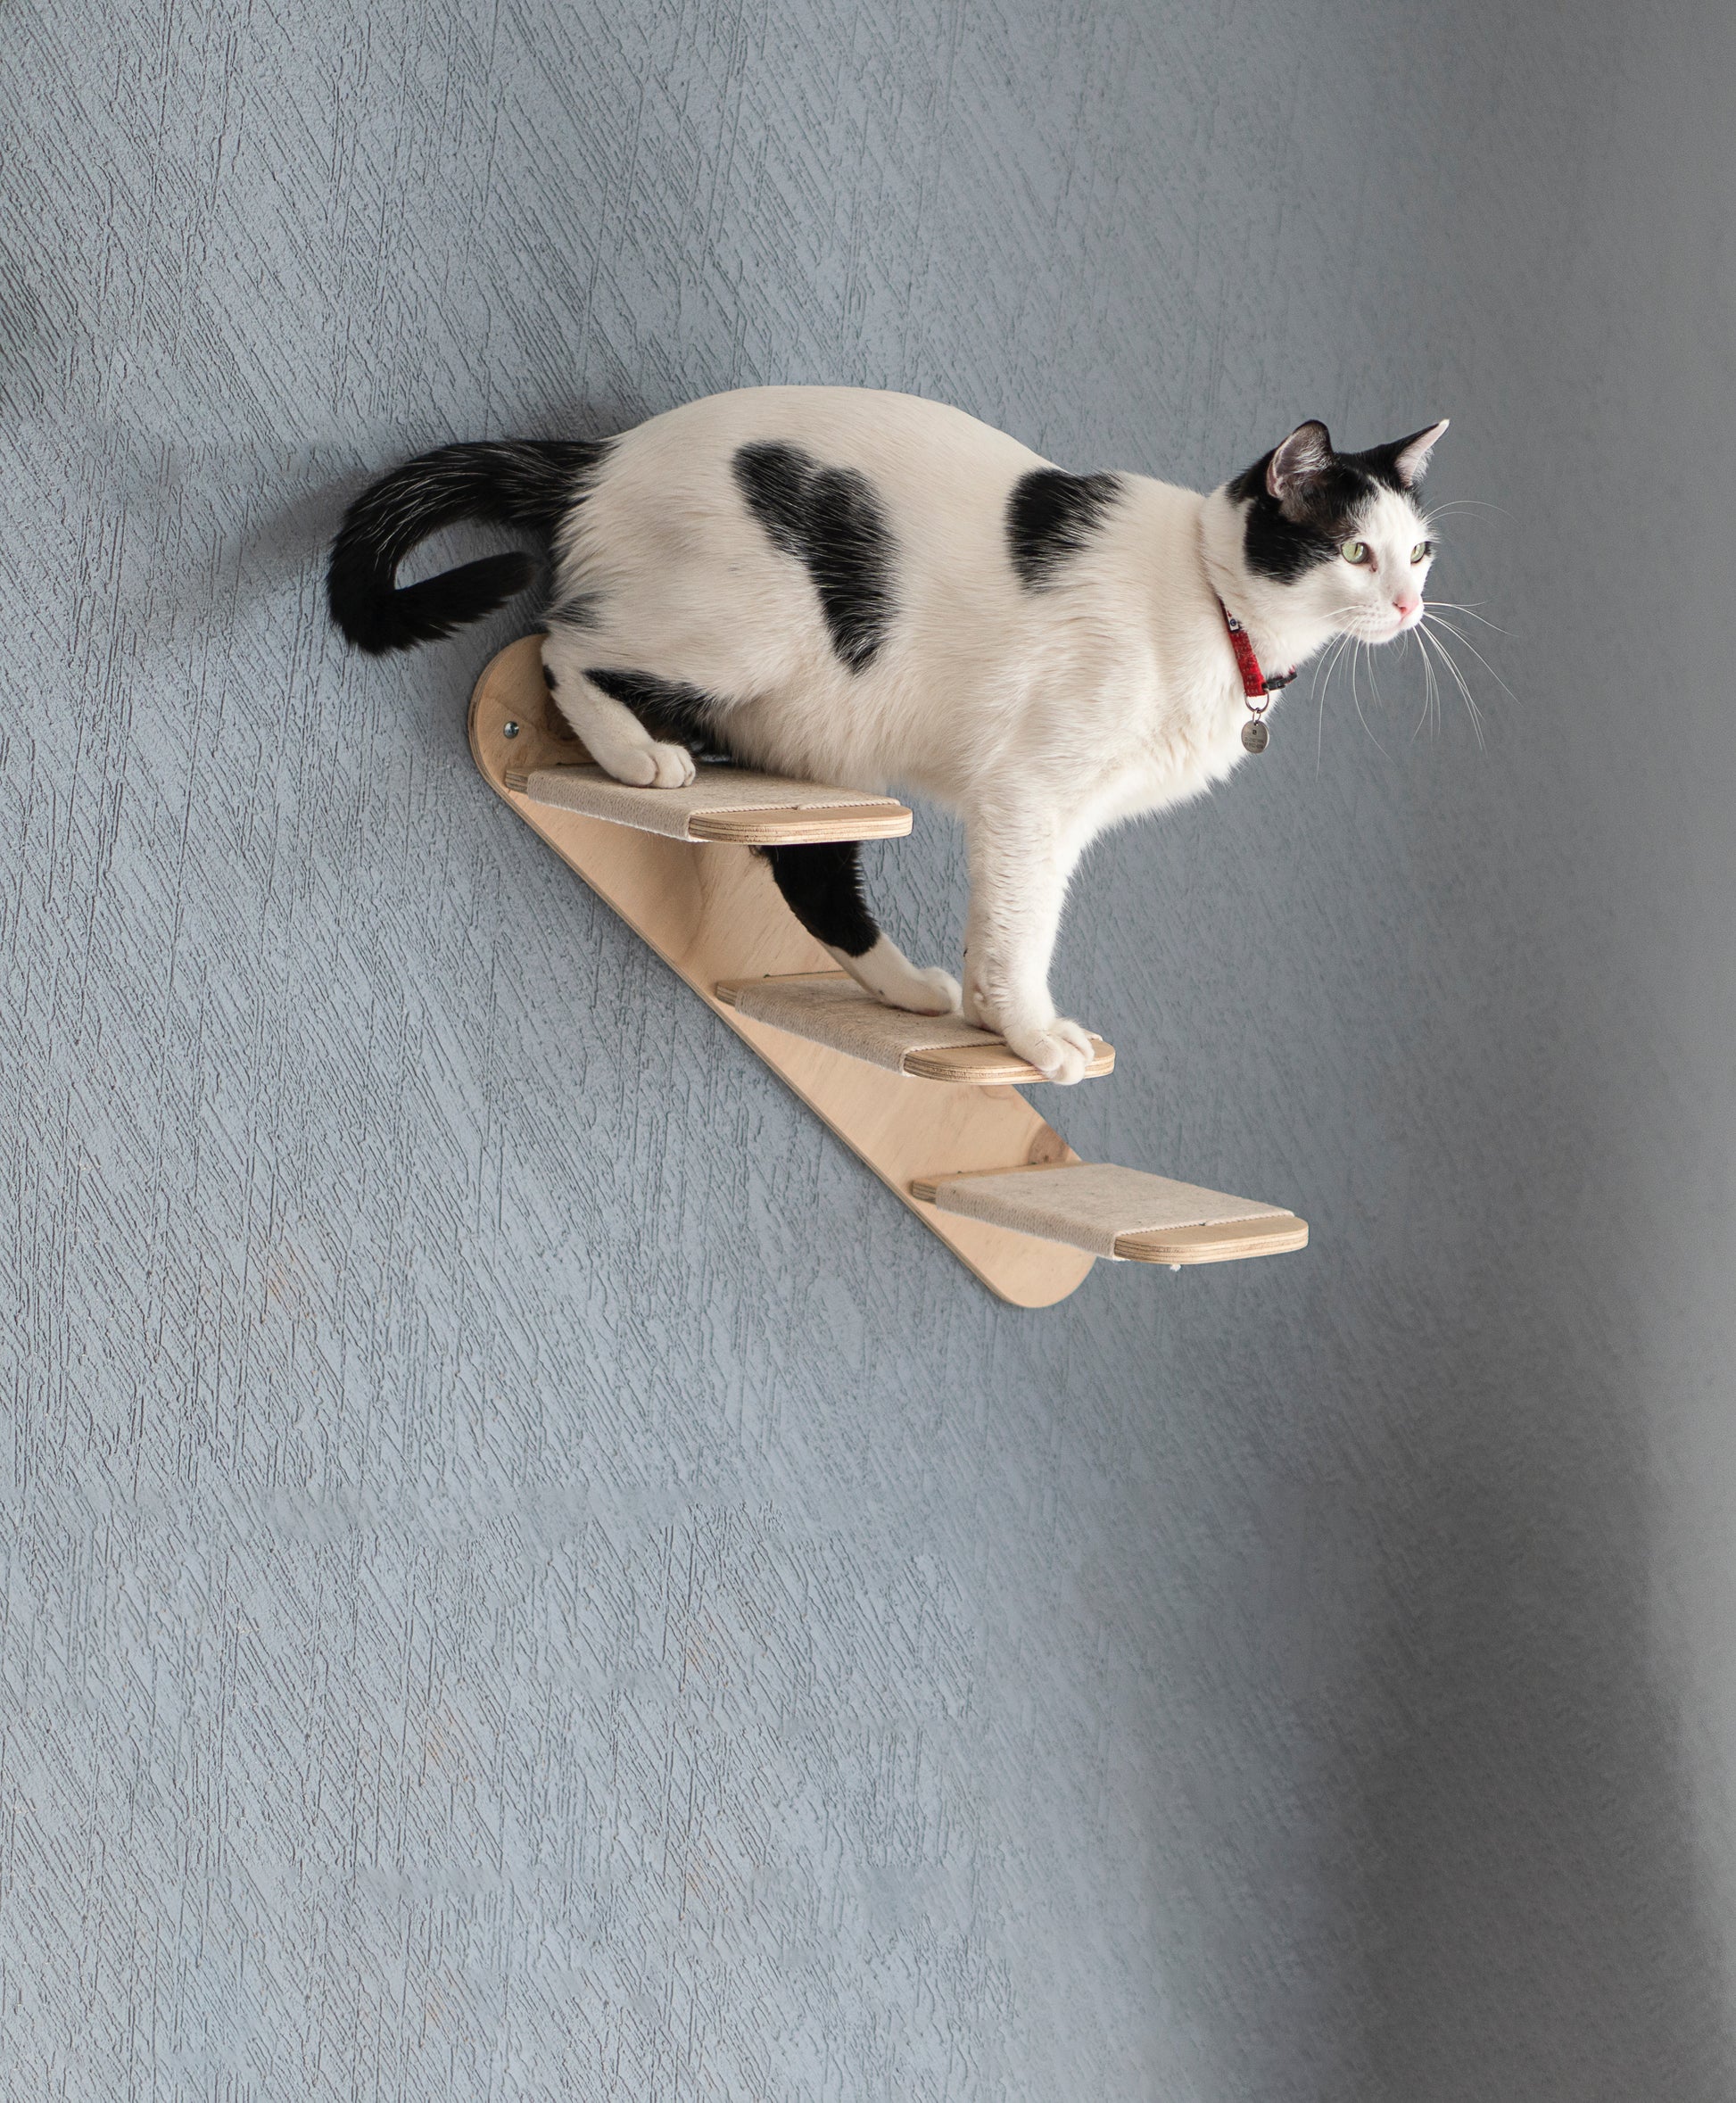 Escalera de madera para gatos – aguapiedra estudio